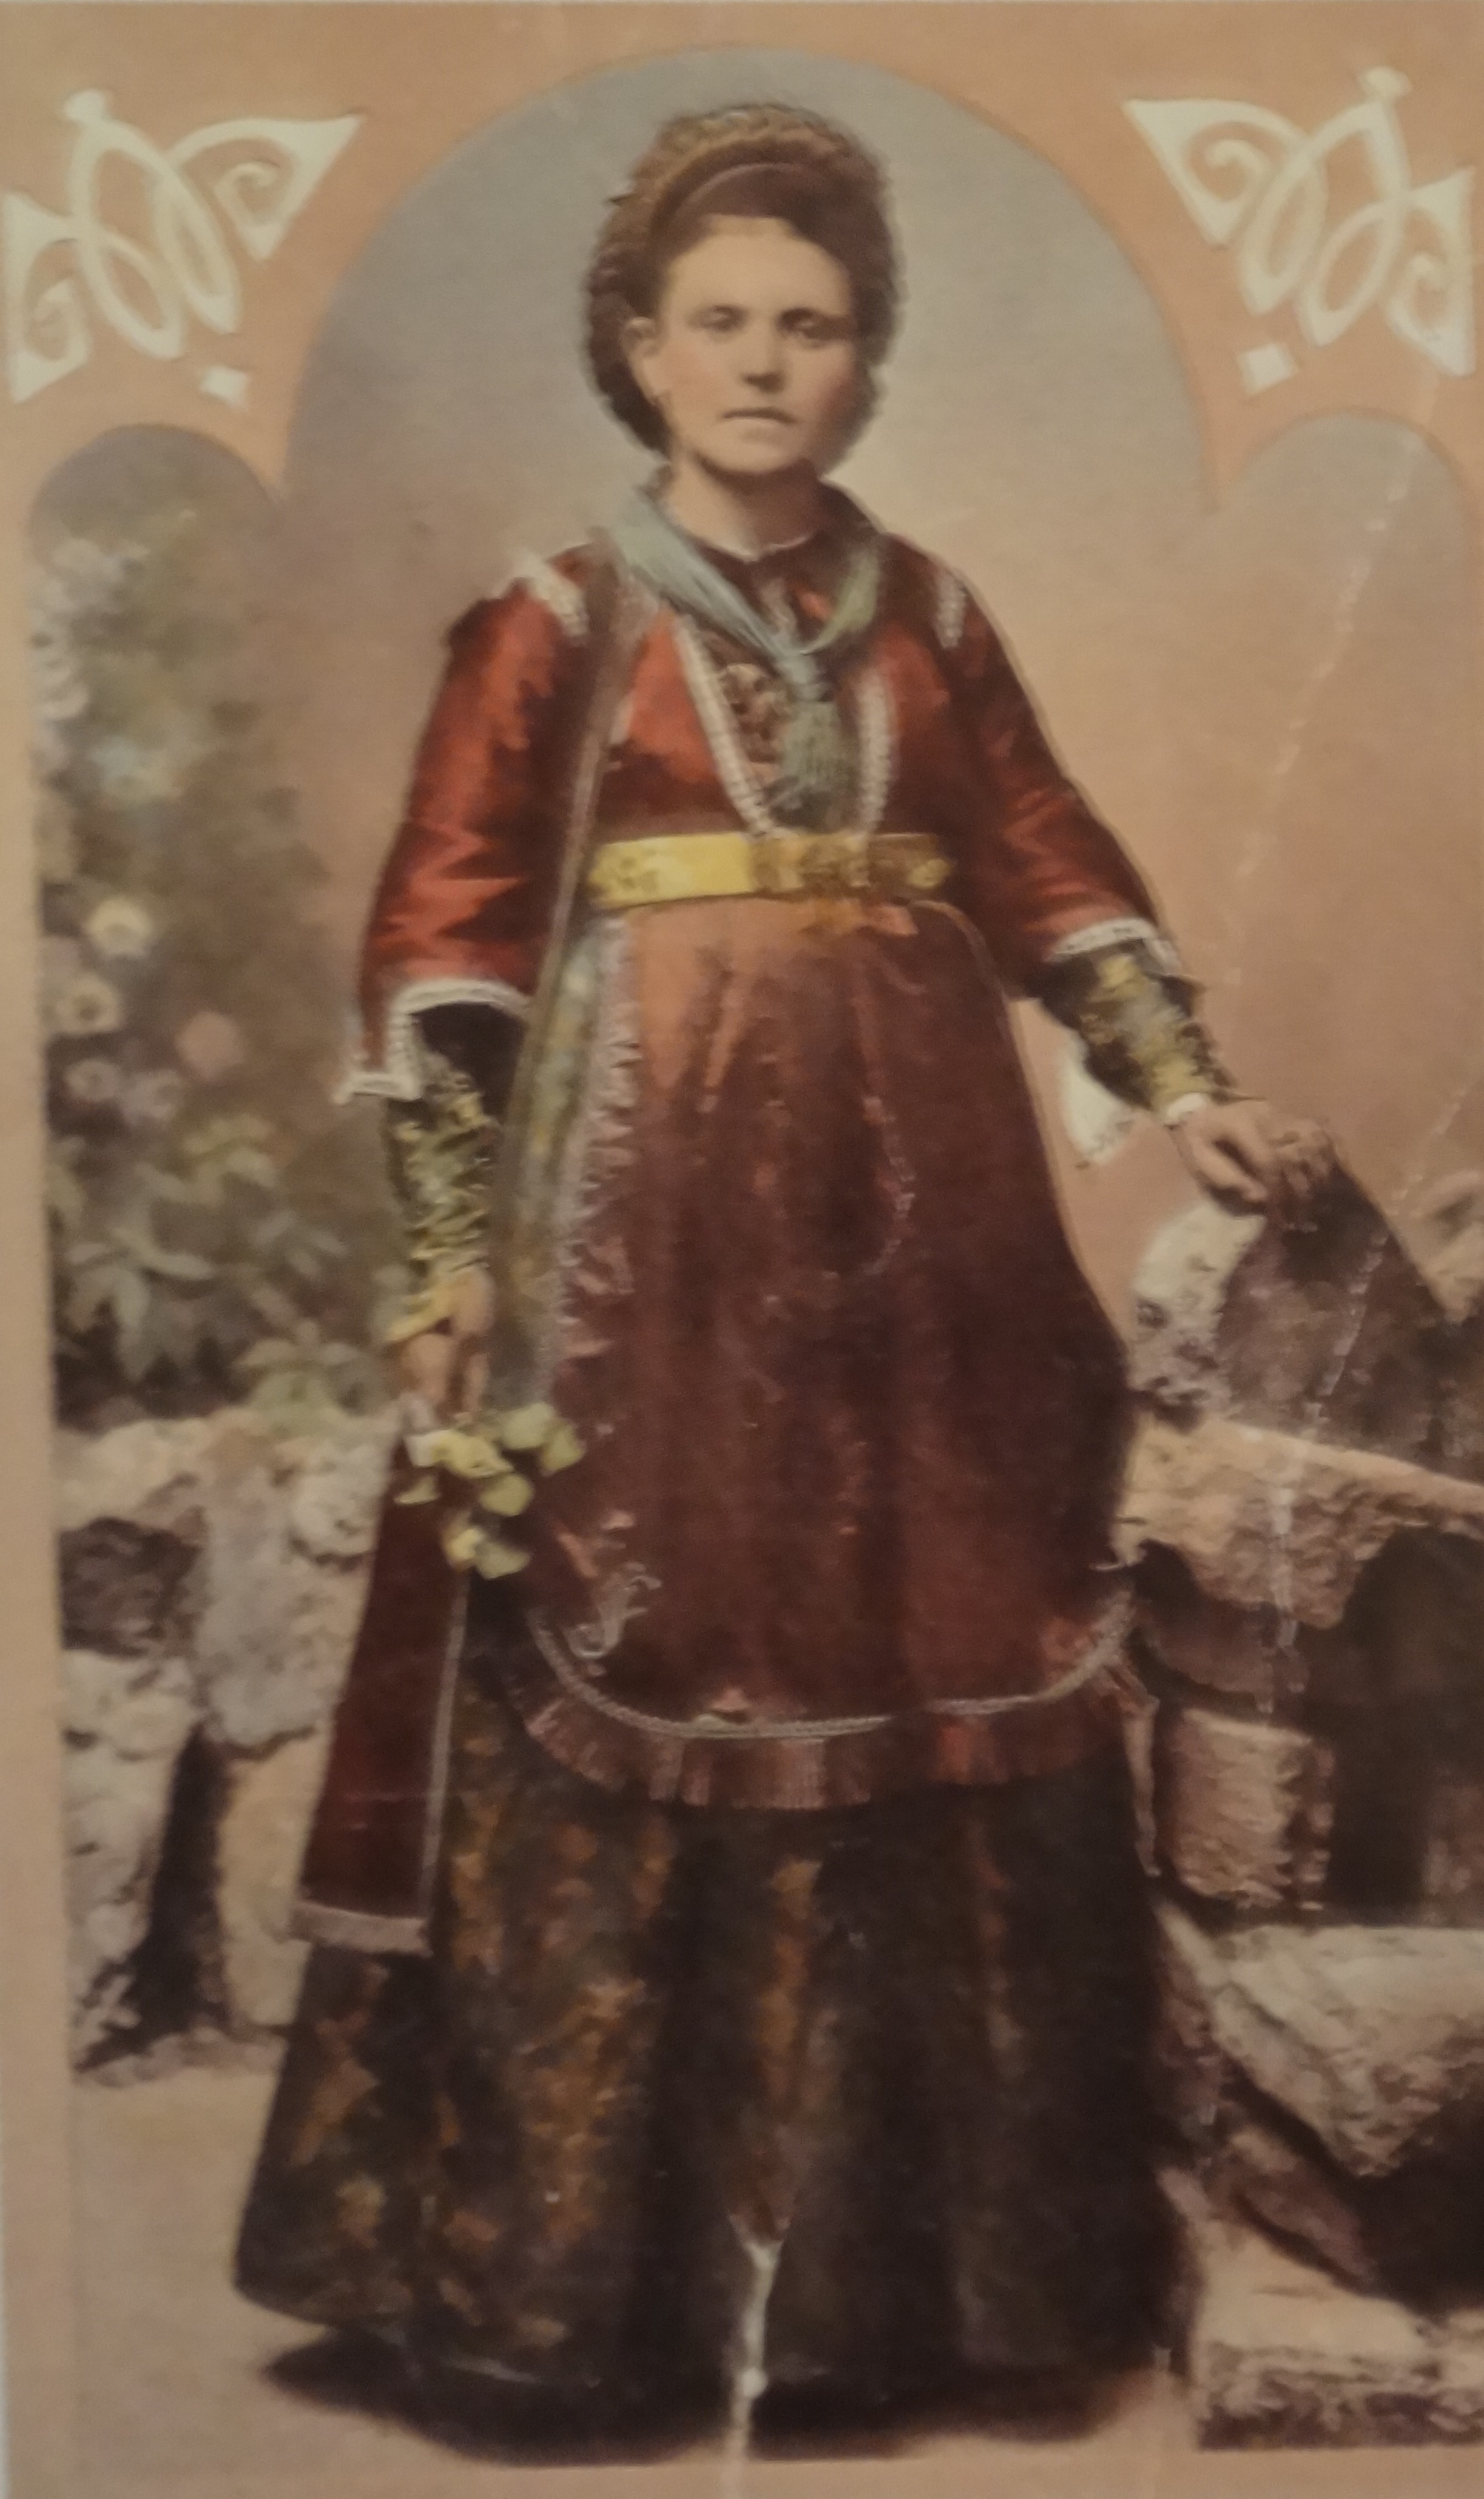 Η αρχόντισσα Καλλίτσα Παπαπολυμέρου ανηψιά του Γεωργίου Αβέρωφ, στη Λαμία με μετσοβίτικη ενδυμσία, 1883